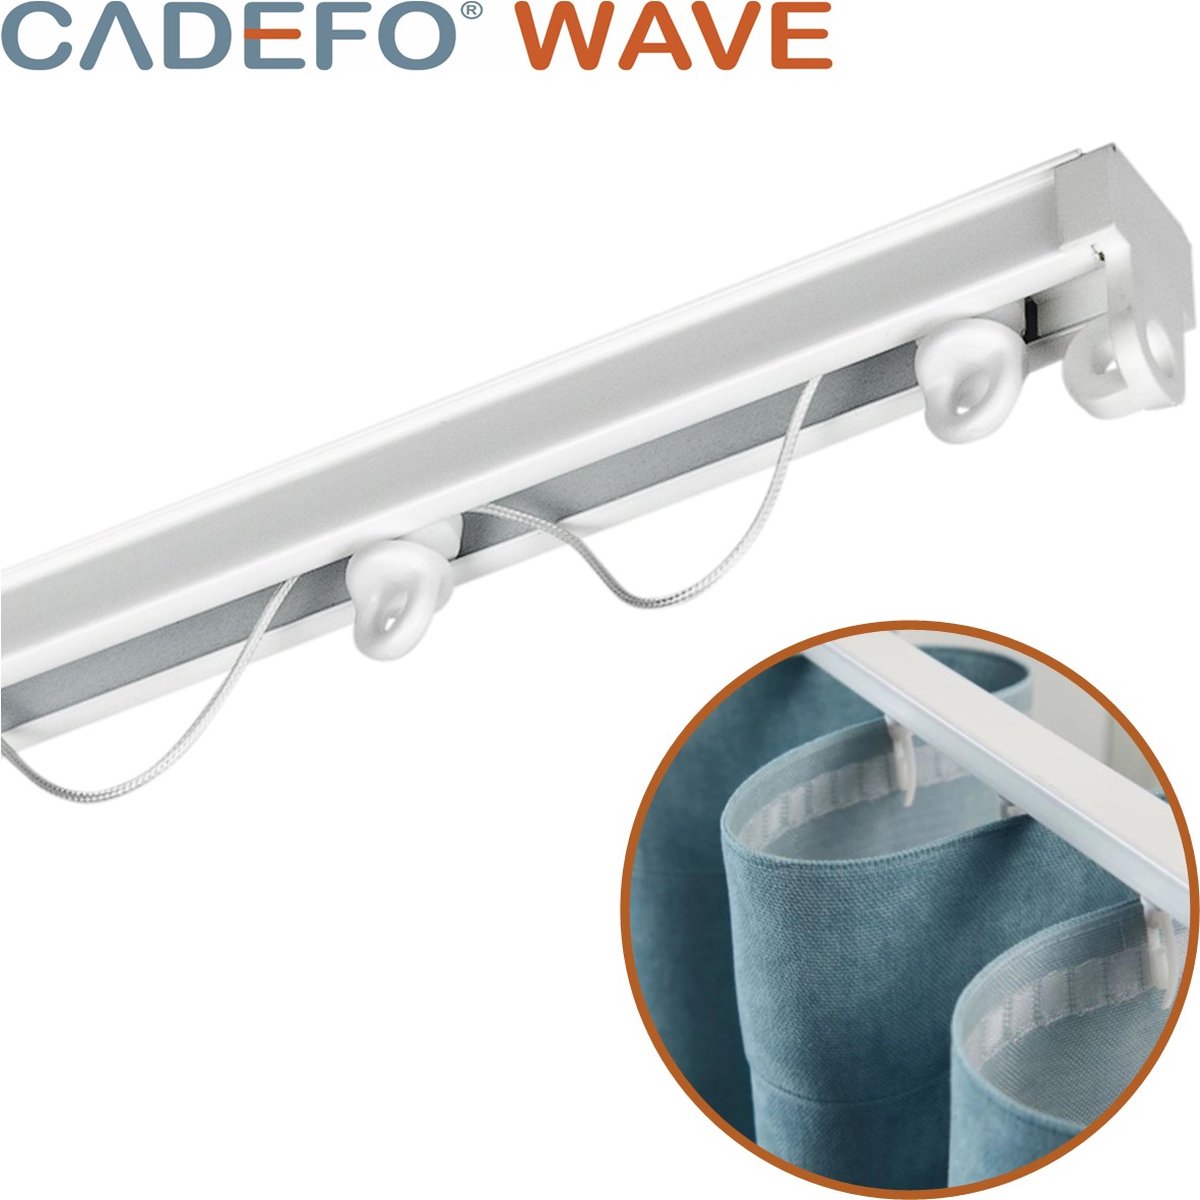 CADEFO WAVE (151 - 200 cm) Gordijnrails - Compleet op maat! - UIT 1 STUK - Leverbaar tot 6 meter - Plafondbevestiging - Lengte 182 cm